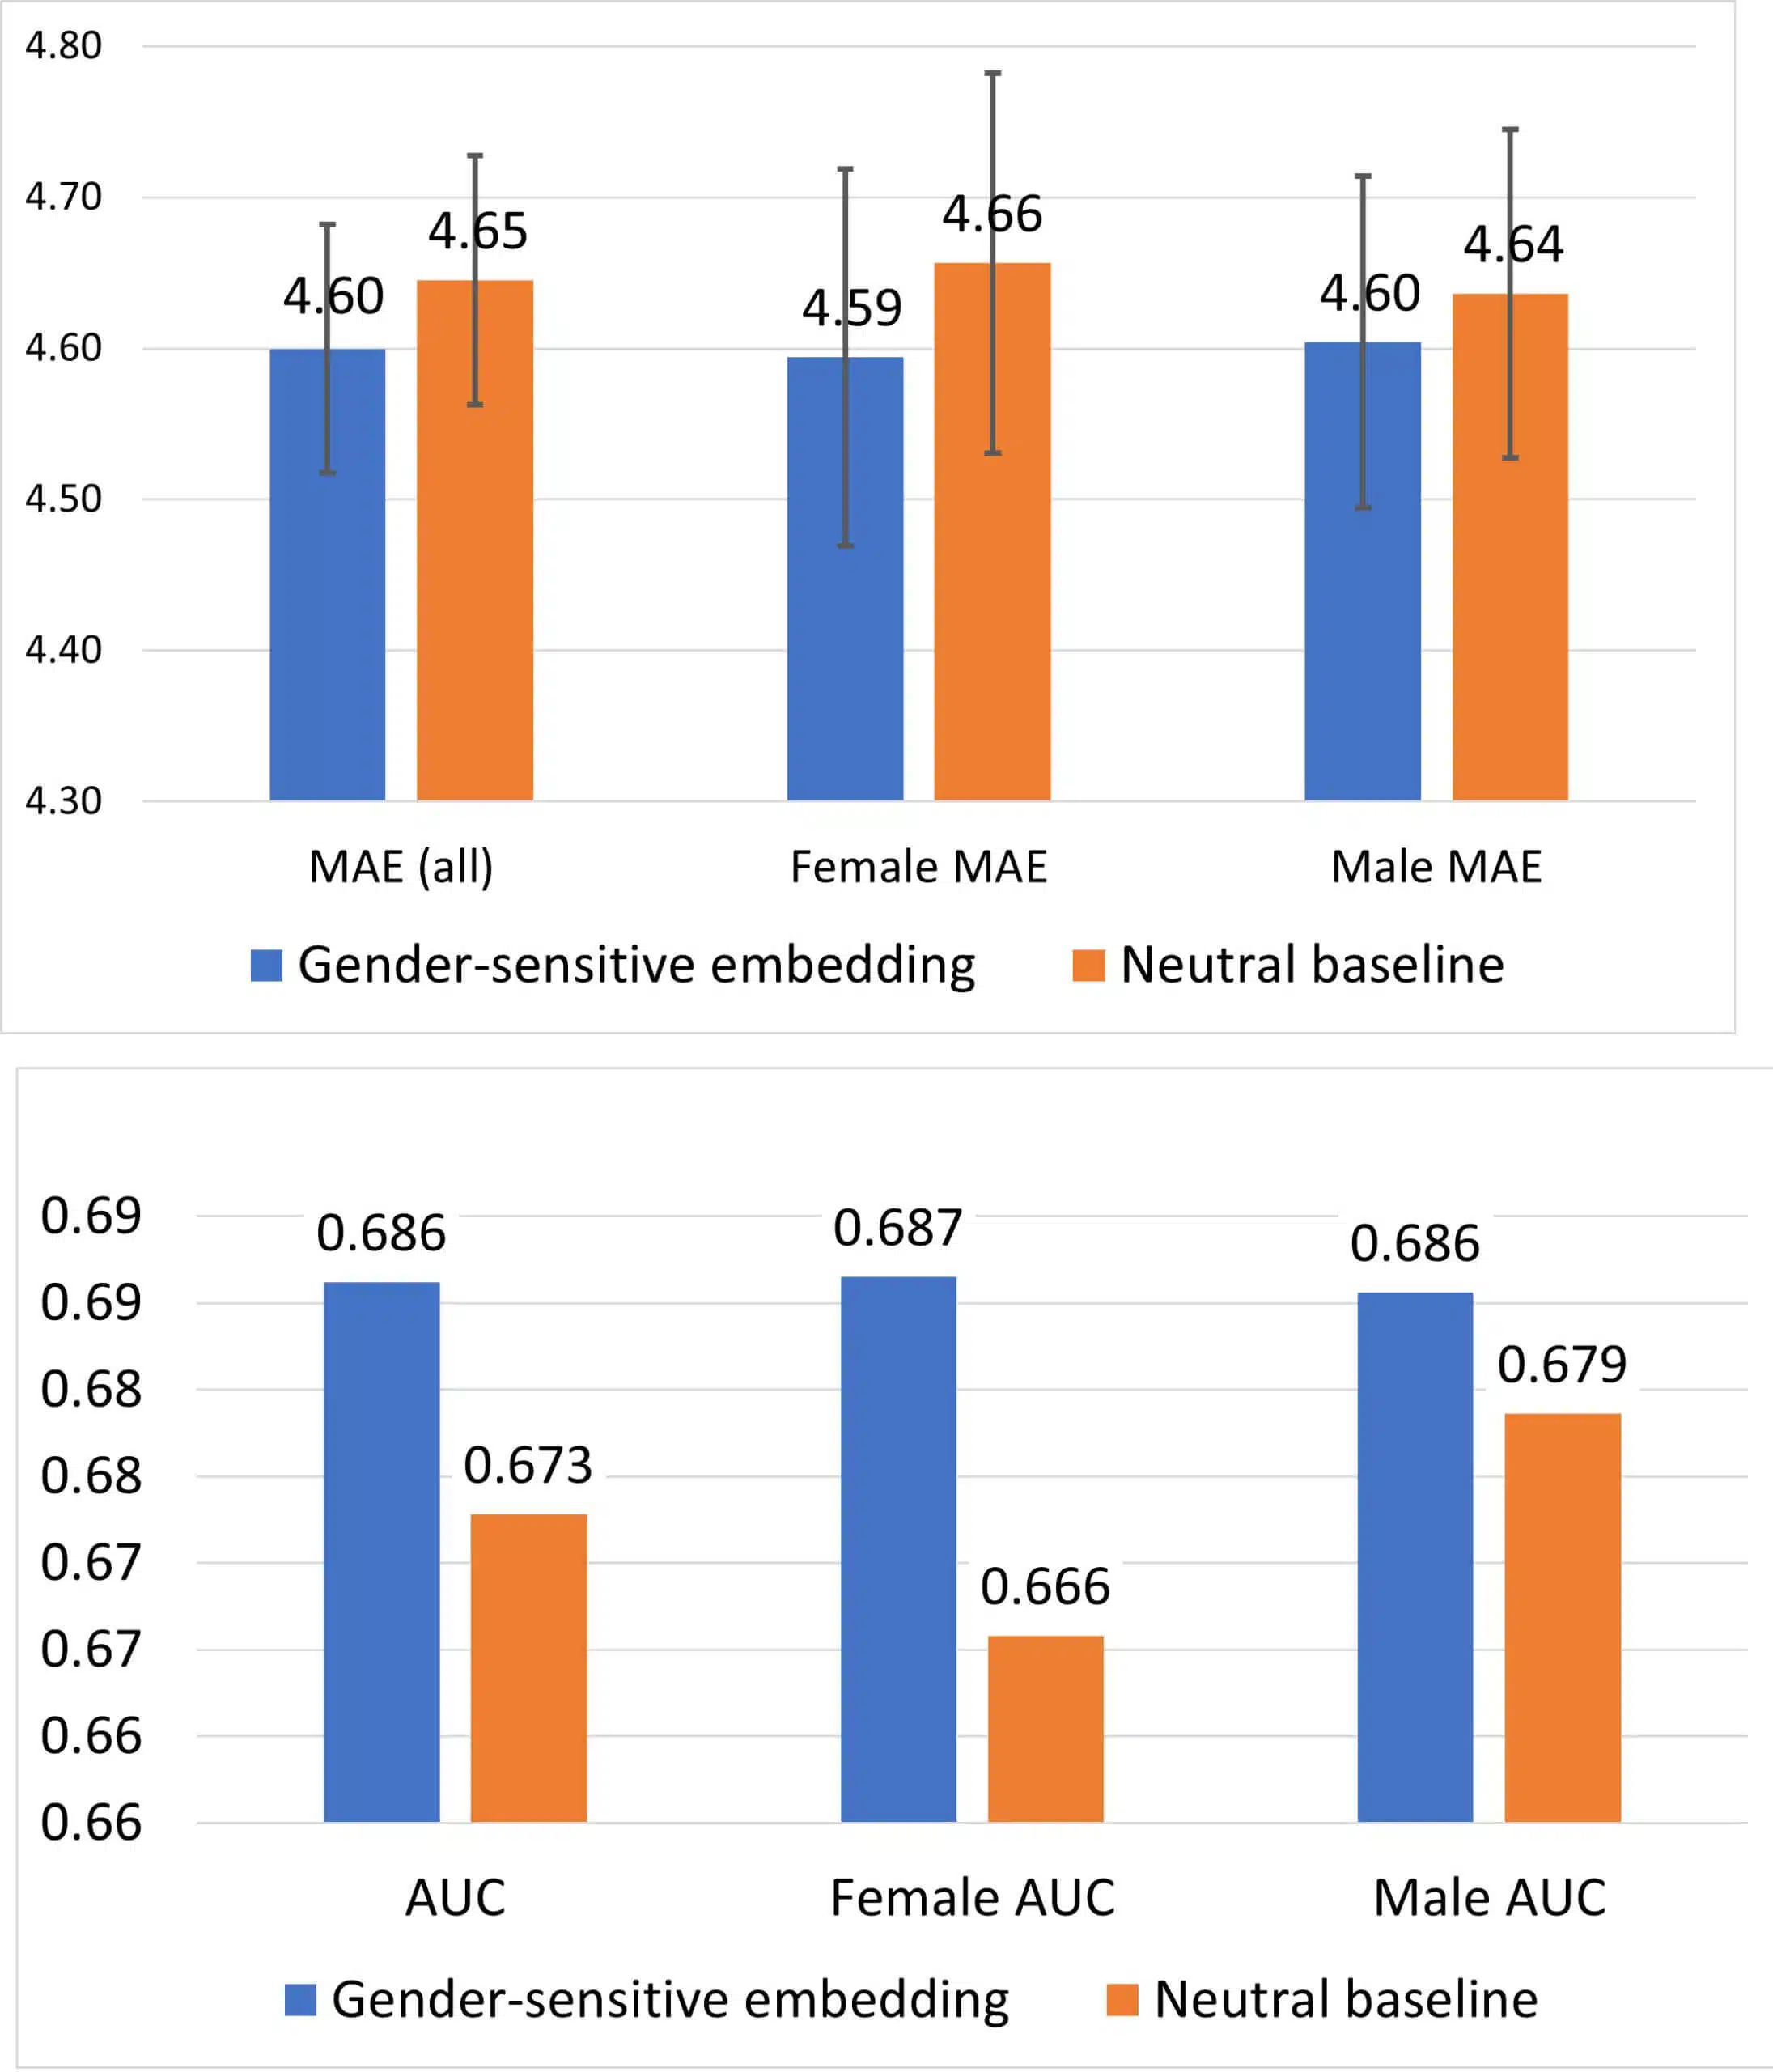 בגרף העליון: הטעות הממוצעת (MAE) במשימת חיזוי משך השהות של מטופל בבית-החולים (נמוך יותר - טוב יותר) בחלוקה לנשים, גברים וכלל האוכלוסייה figure 6: מדד השטח מתחת לעקומת ROC במשימת חיזוי של אשפוז-מחדש תוך 30 יום (גבוה יותר - טוב יותר) בחלוקה לנשים, גברים וכלל האוכלוסייה